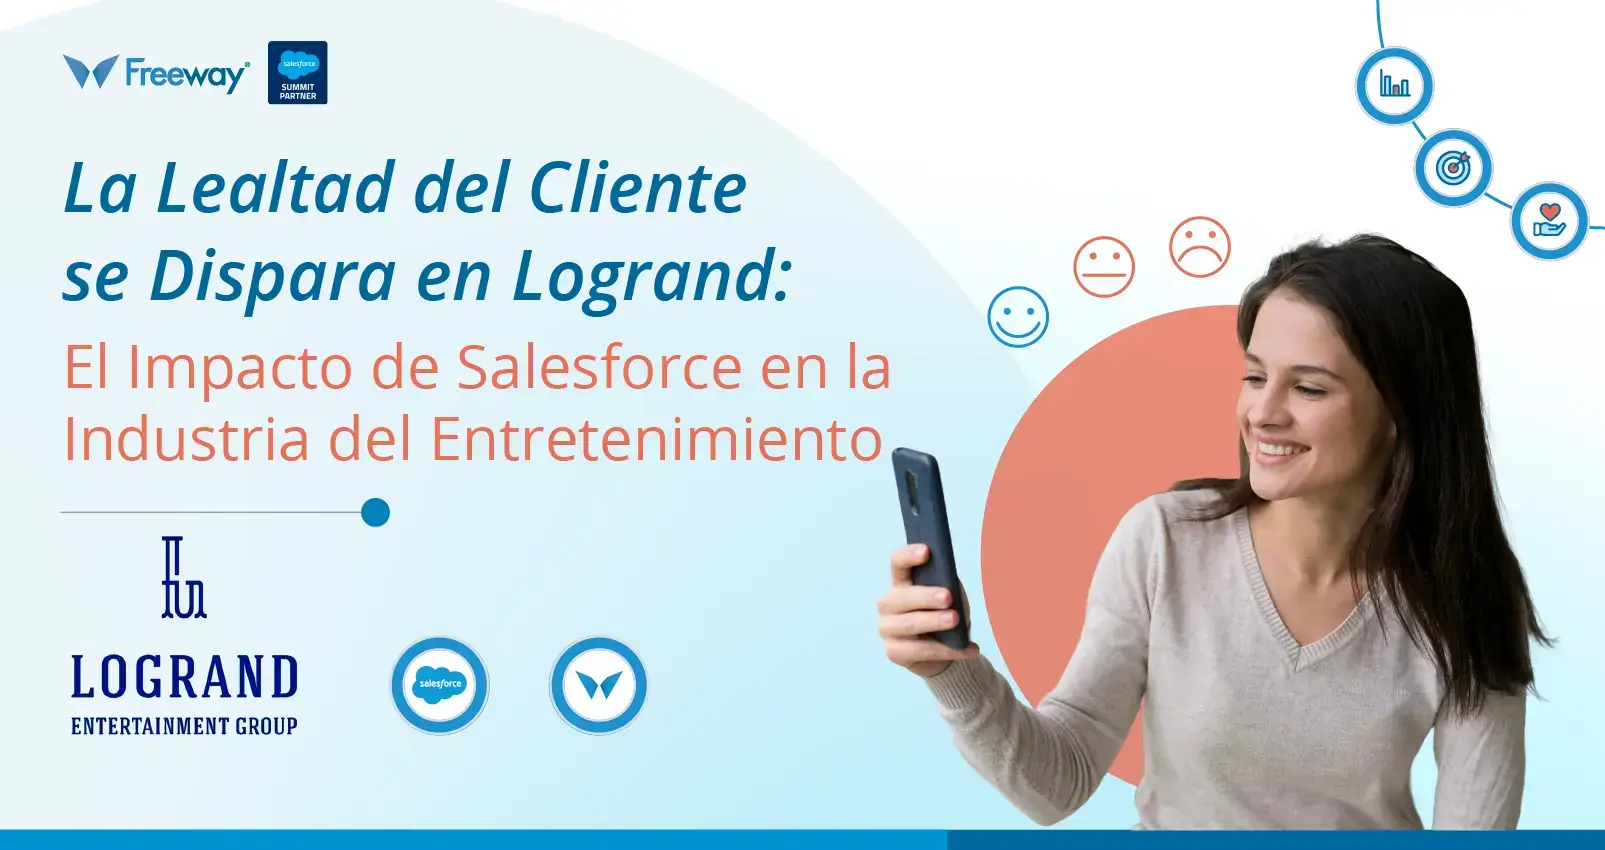 Logrand Entertainment Group Transforma la Experiencia del Cliente y Fomenta la Lealtad con Salesforce, Impulsado por Freeway Consulting